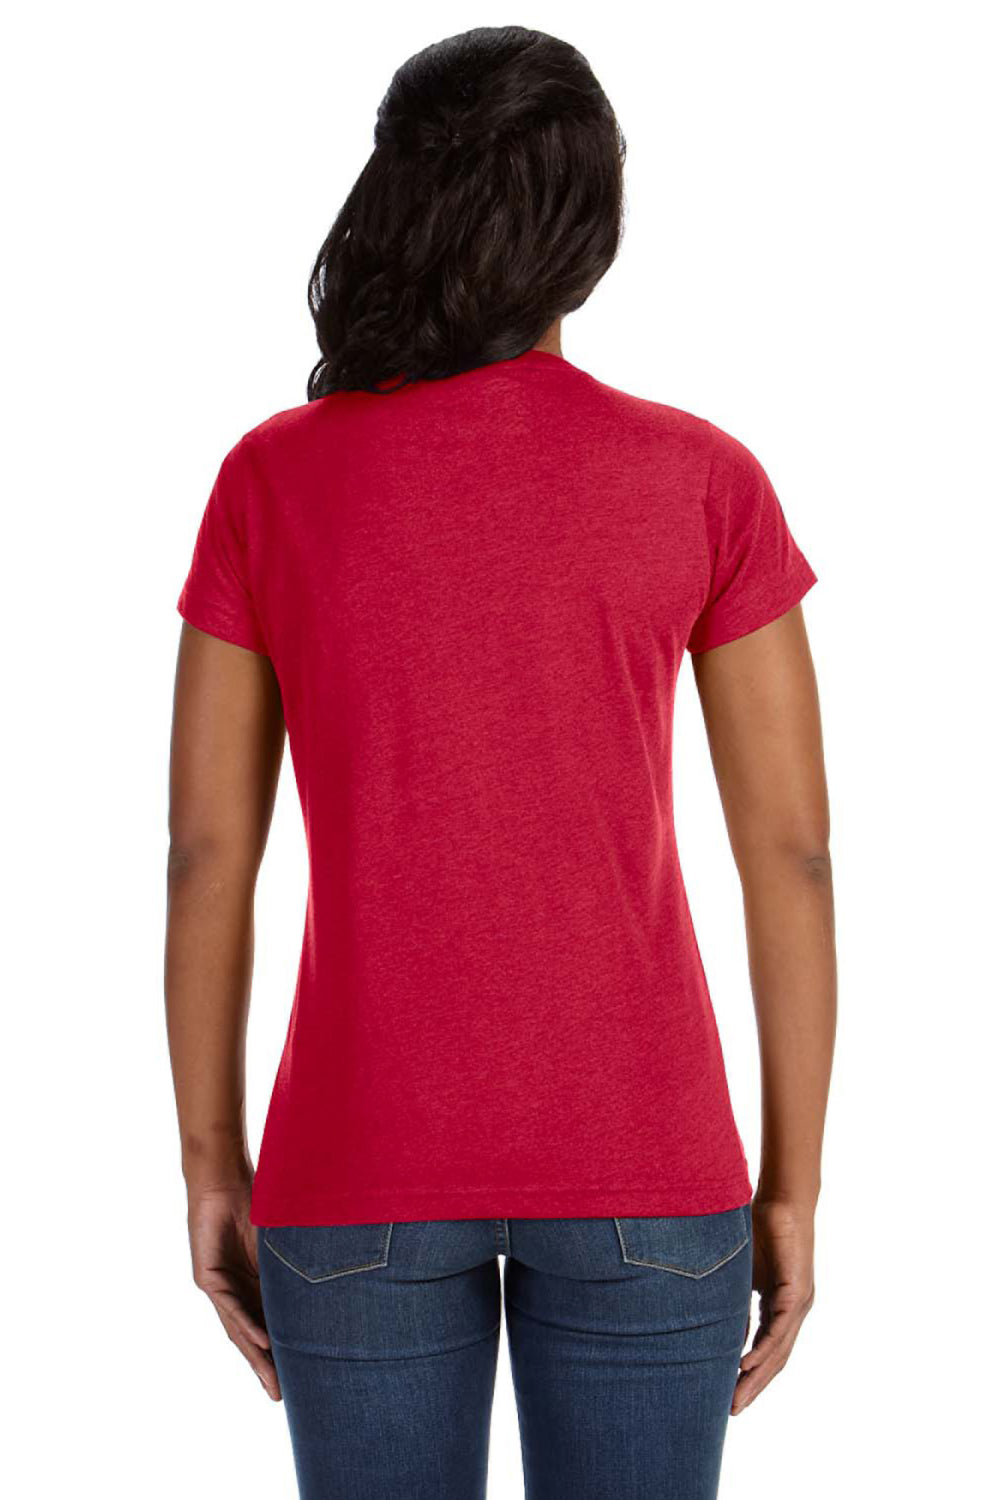 LAT 3516 Fine Jersey Short Sleeve Crewneck T-Shirt Vintage Red Back